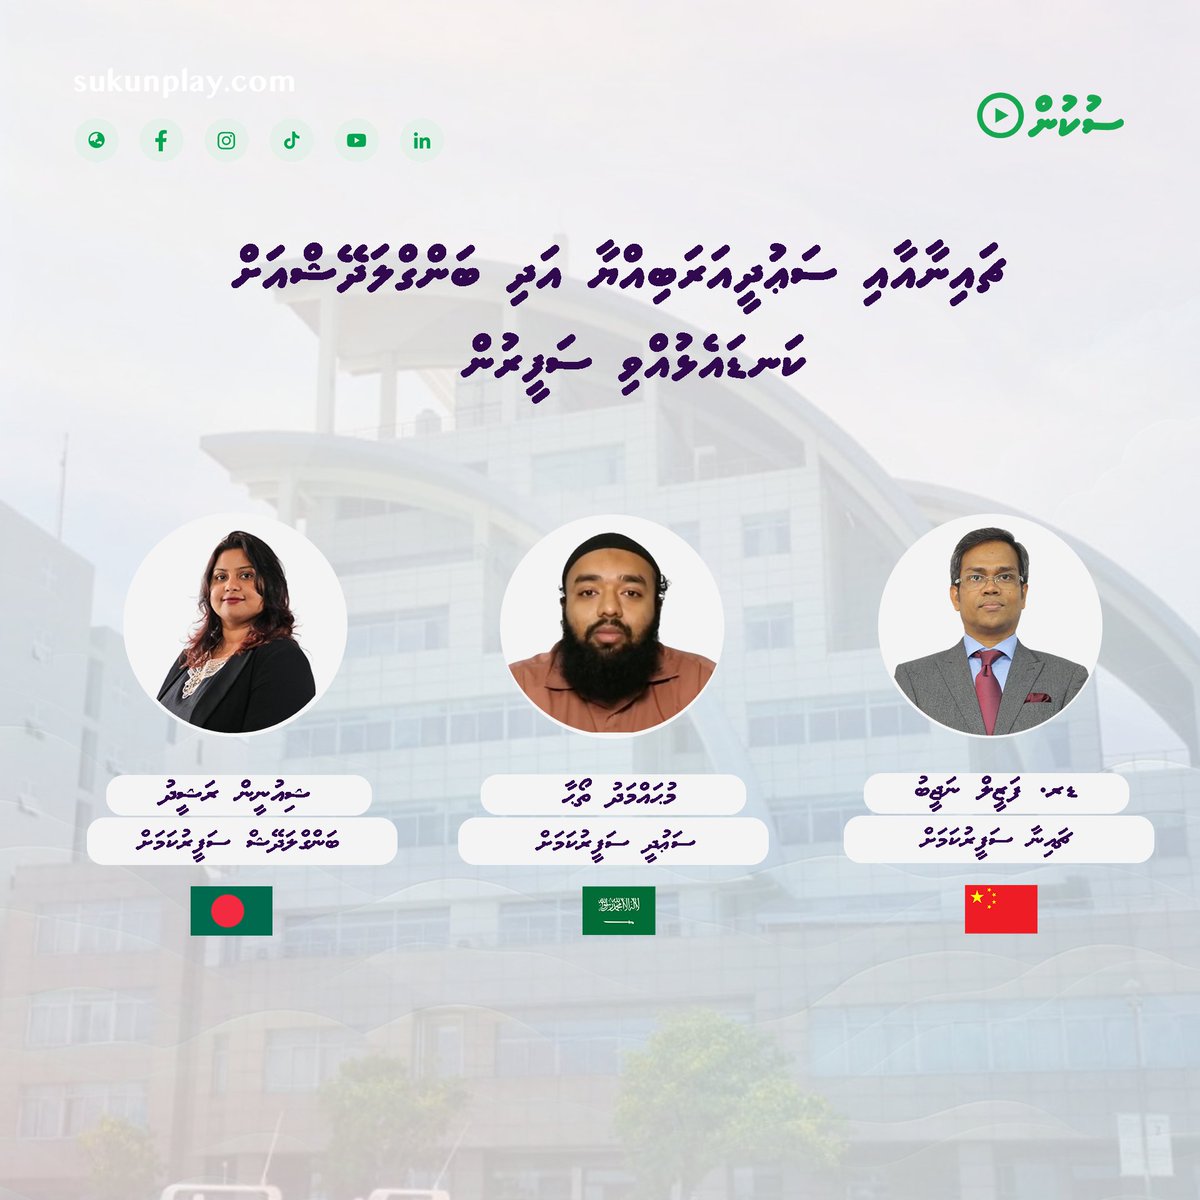 ޗައިނާއަށް ފަޒީލް، ސަޢުދީއަށް ތޯޙާ އަދި ބަންގްލަދޭޝްއަށް ޝިއުނީން #maldives @MoFAmv